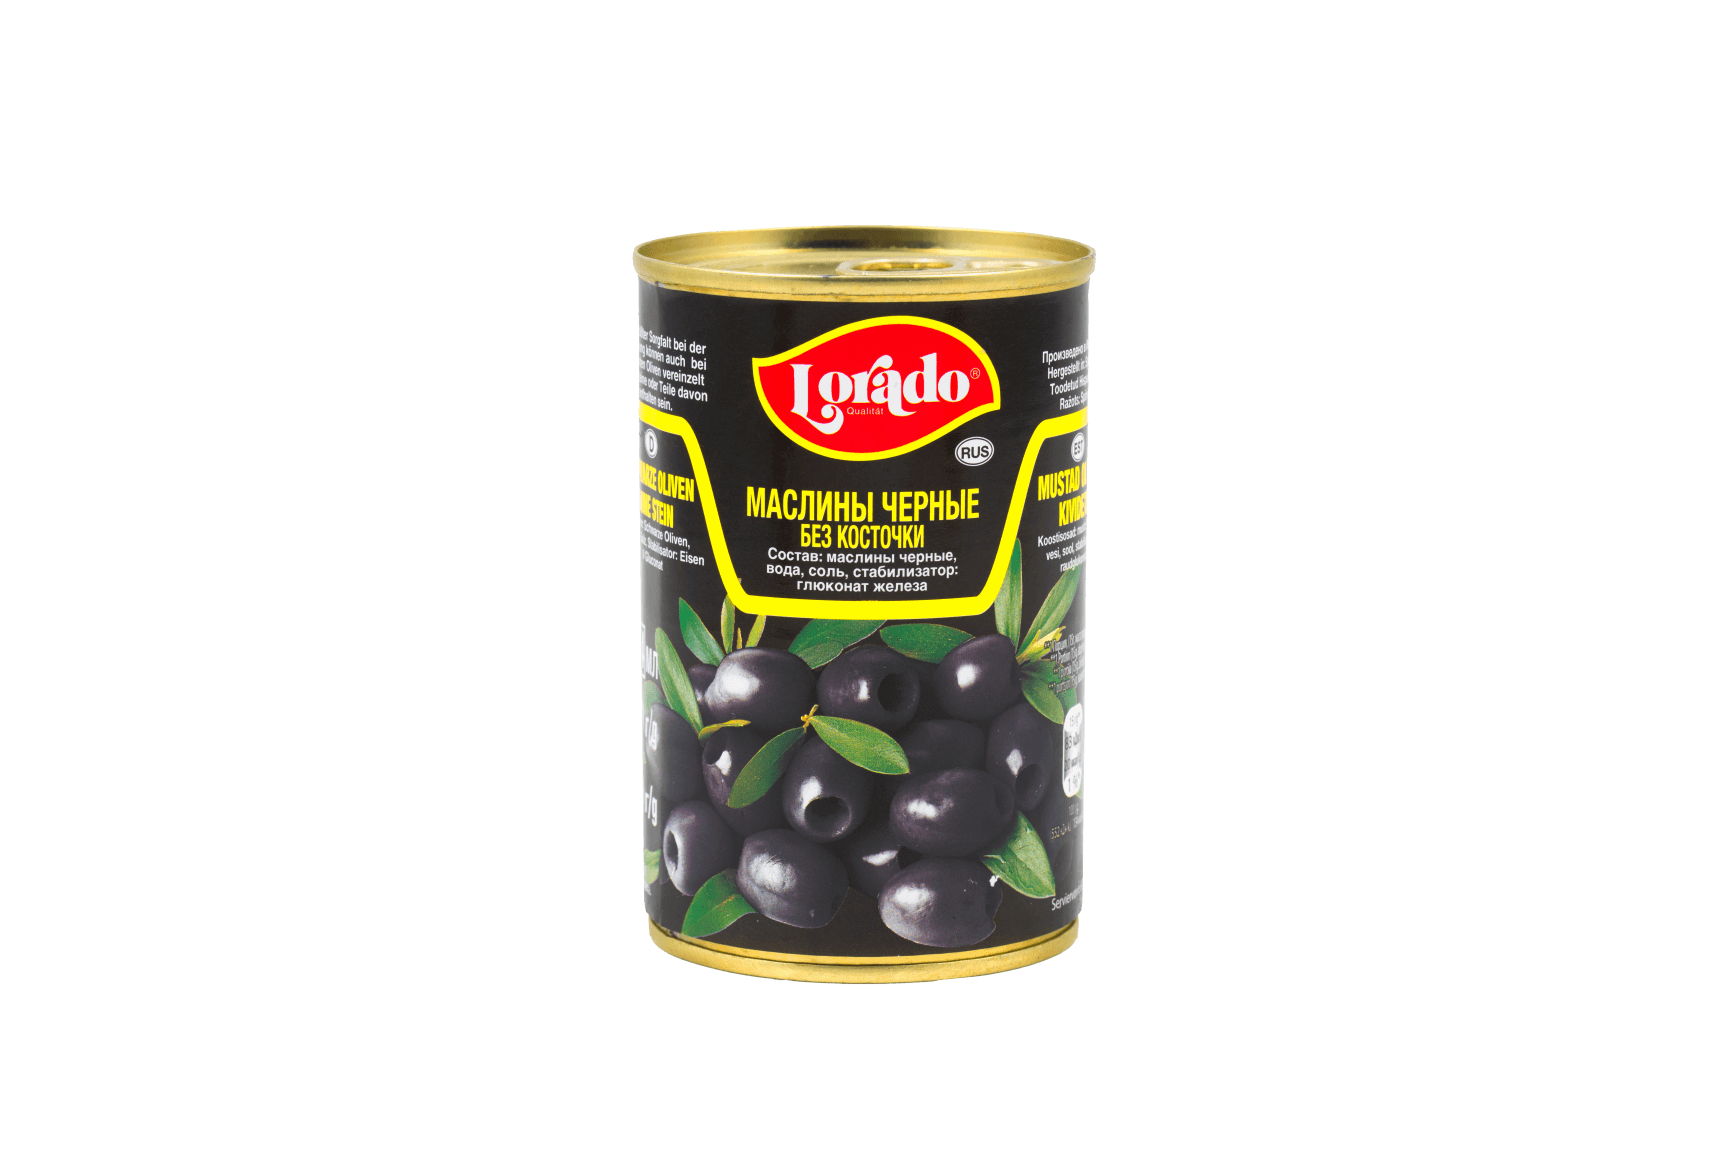 Mustad oliivid ilma kivideta soolvees 300g/110g